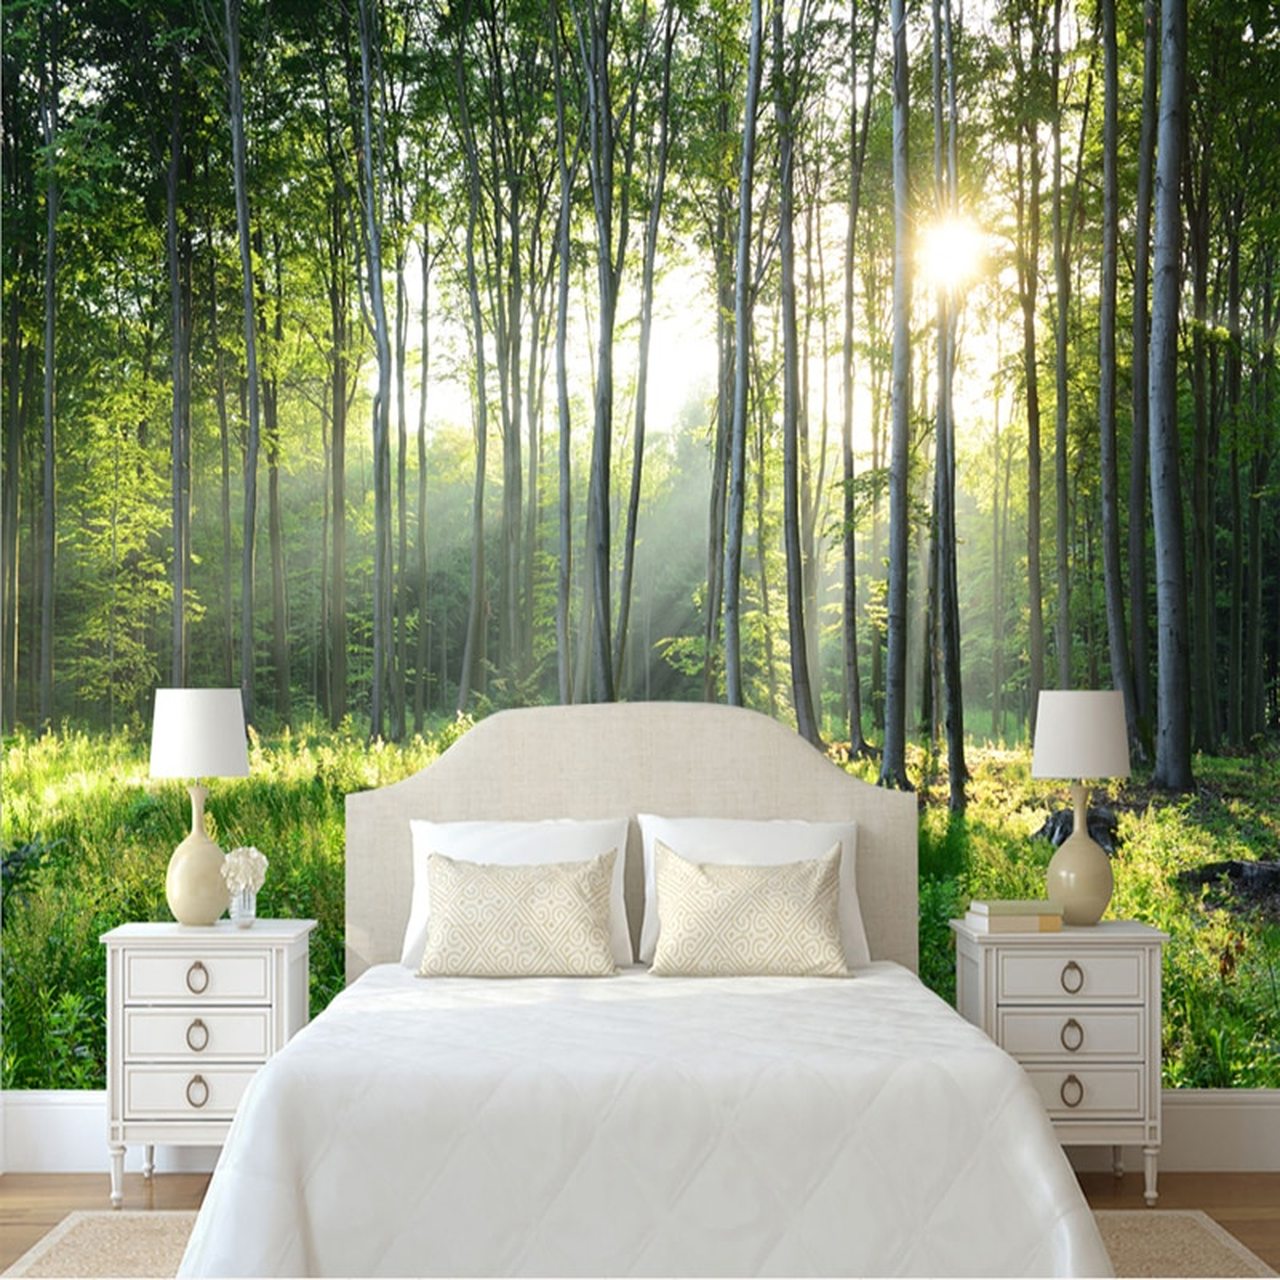 carta da parati verde della camera da letto,natura,camera,mobilia,letto,albero